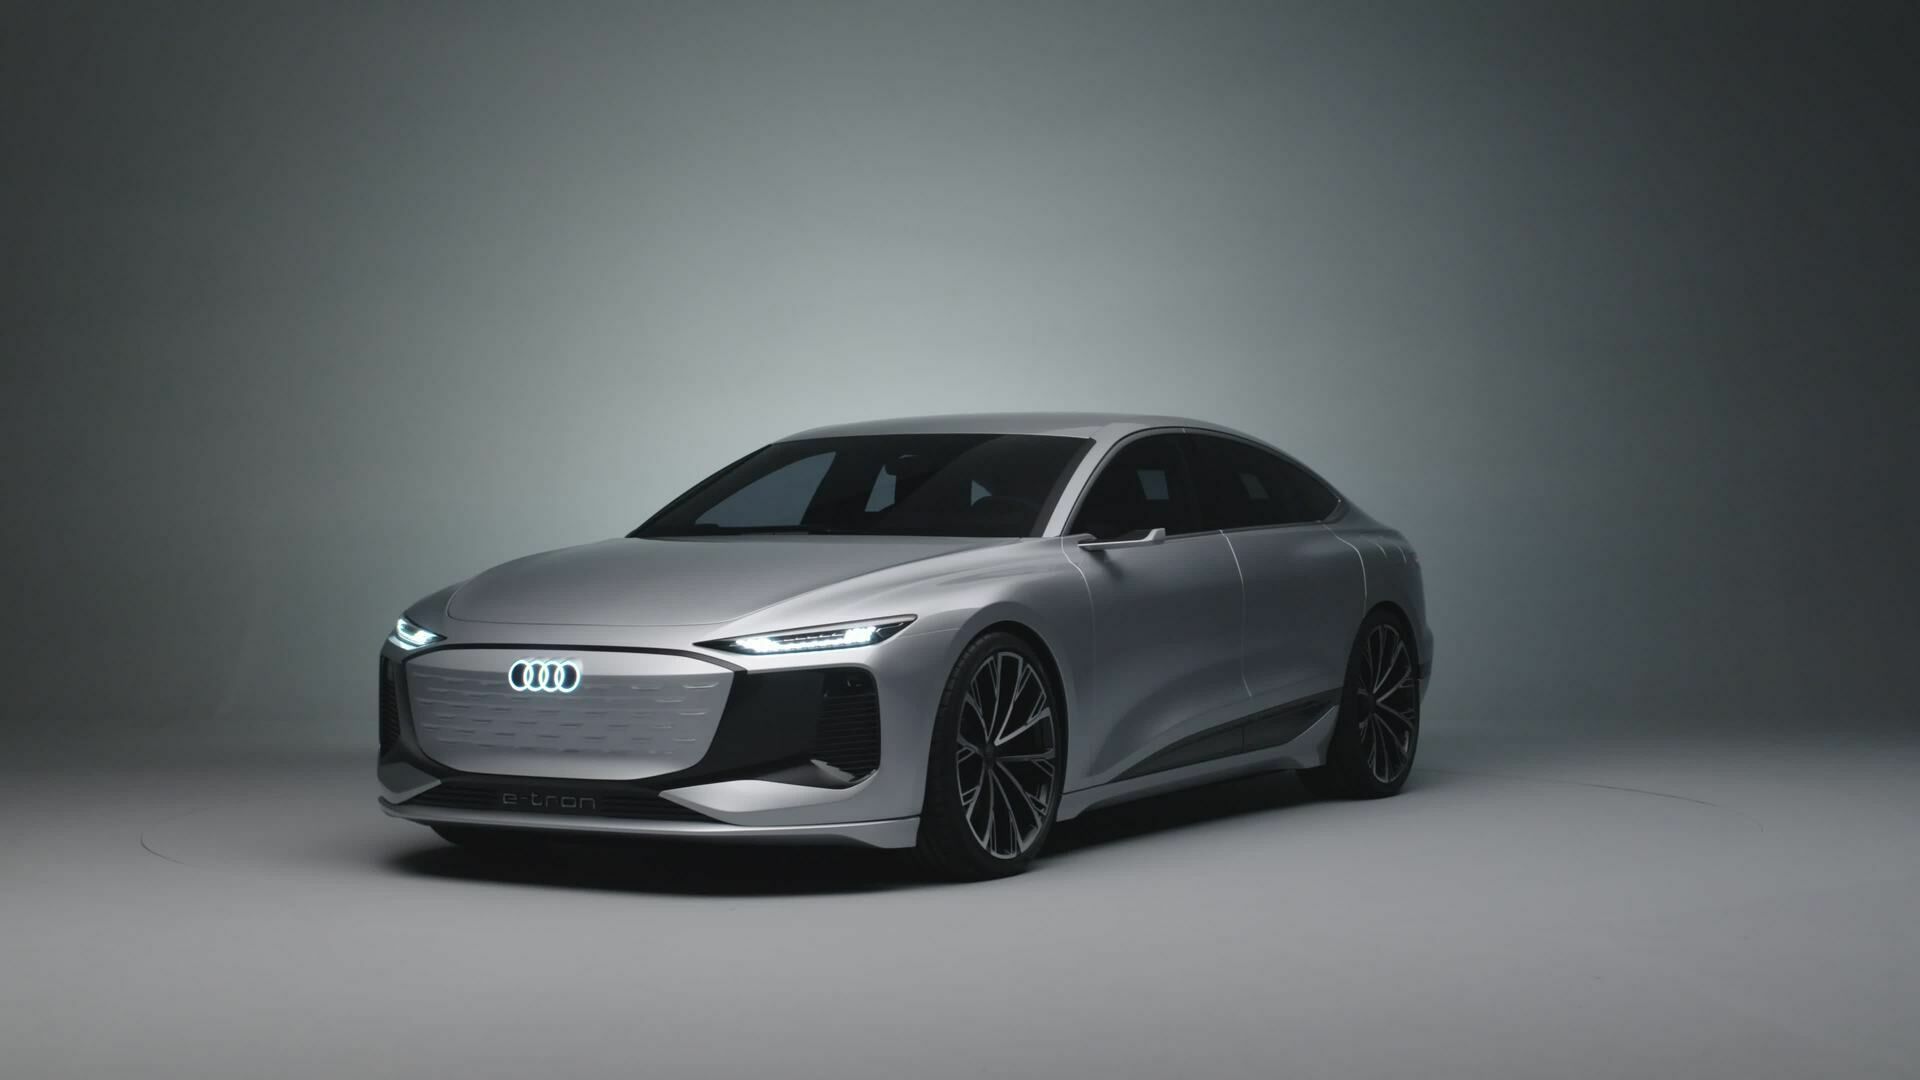 Das Design des neuen Audi A6 e-tron concept